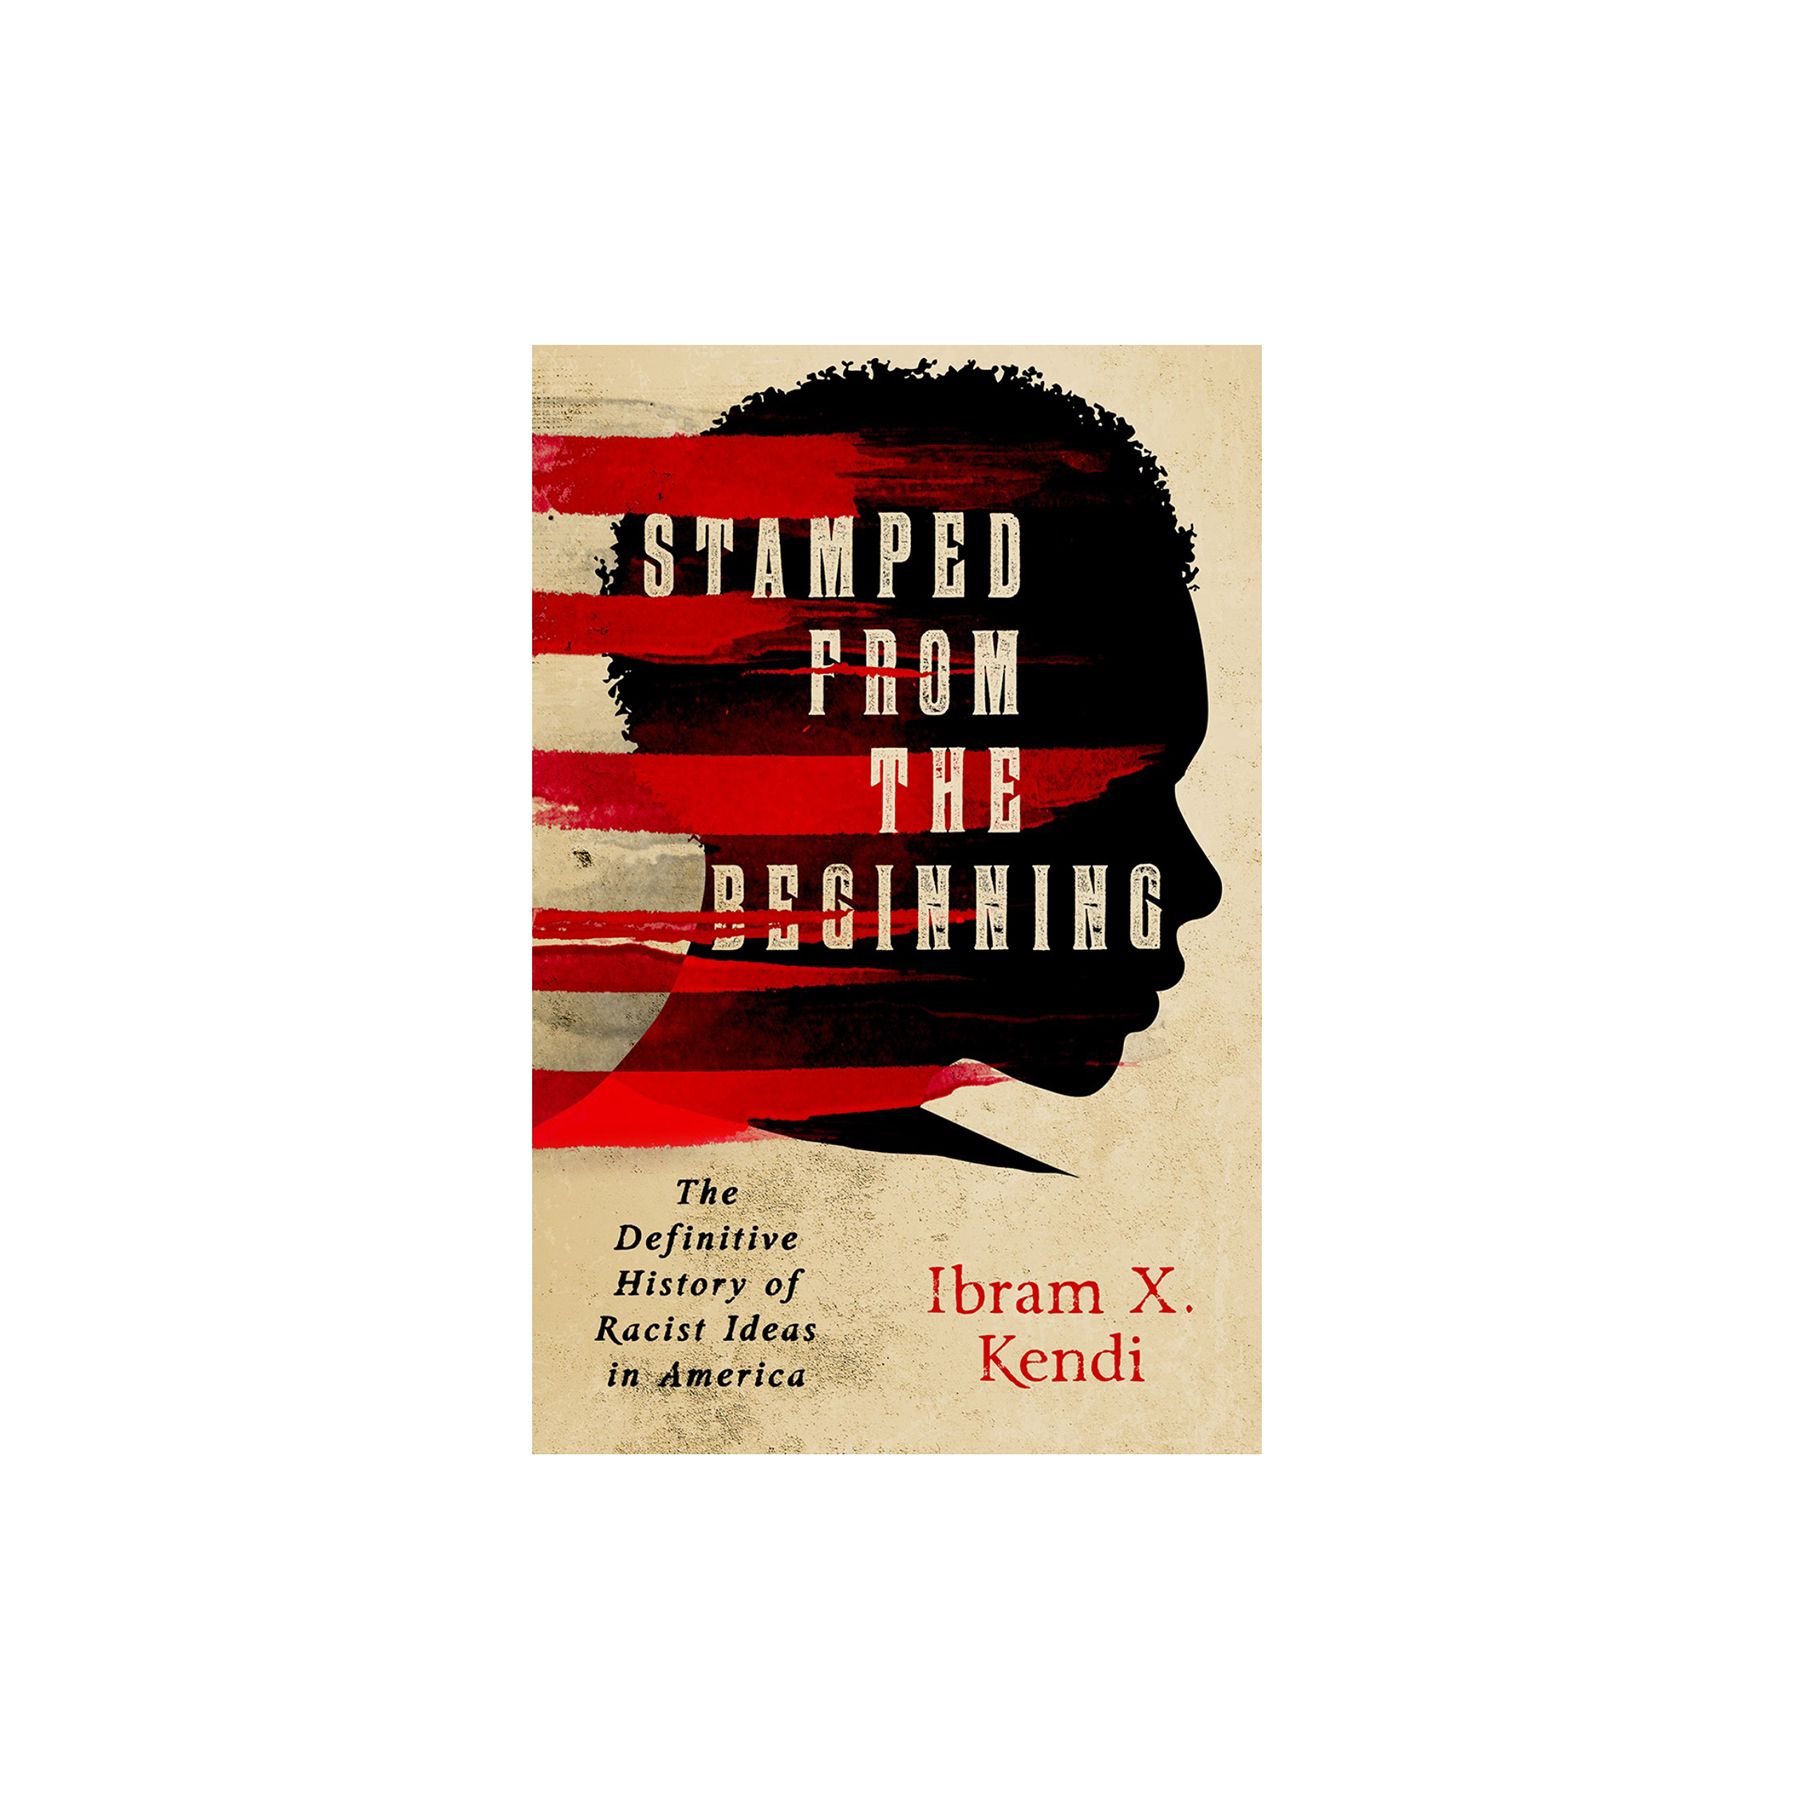 Von Anfang an geprägt: Die endgültige Geschichte rassistischer Ideen in Amerika, von Ibram X. Kendi